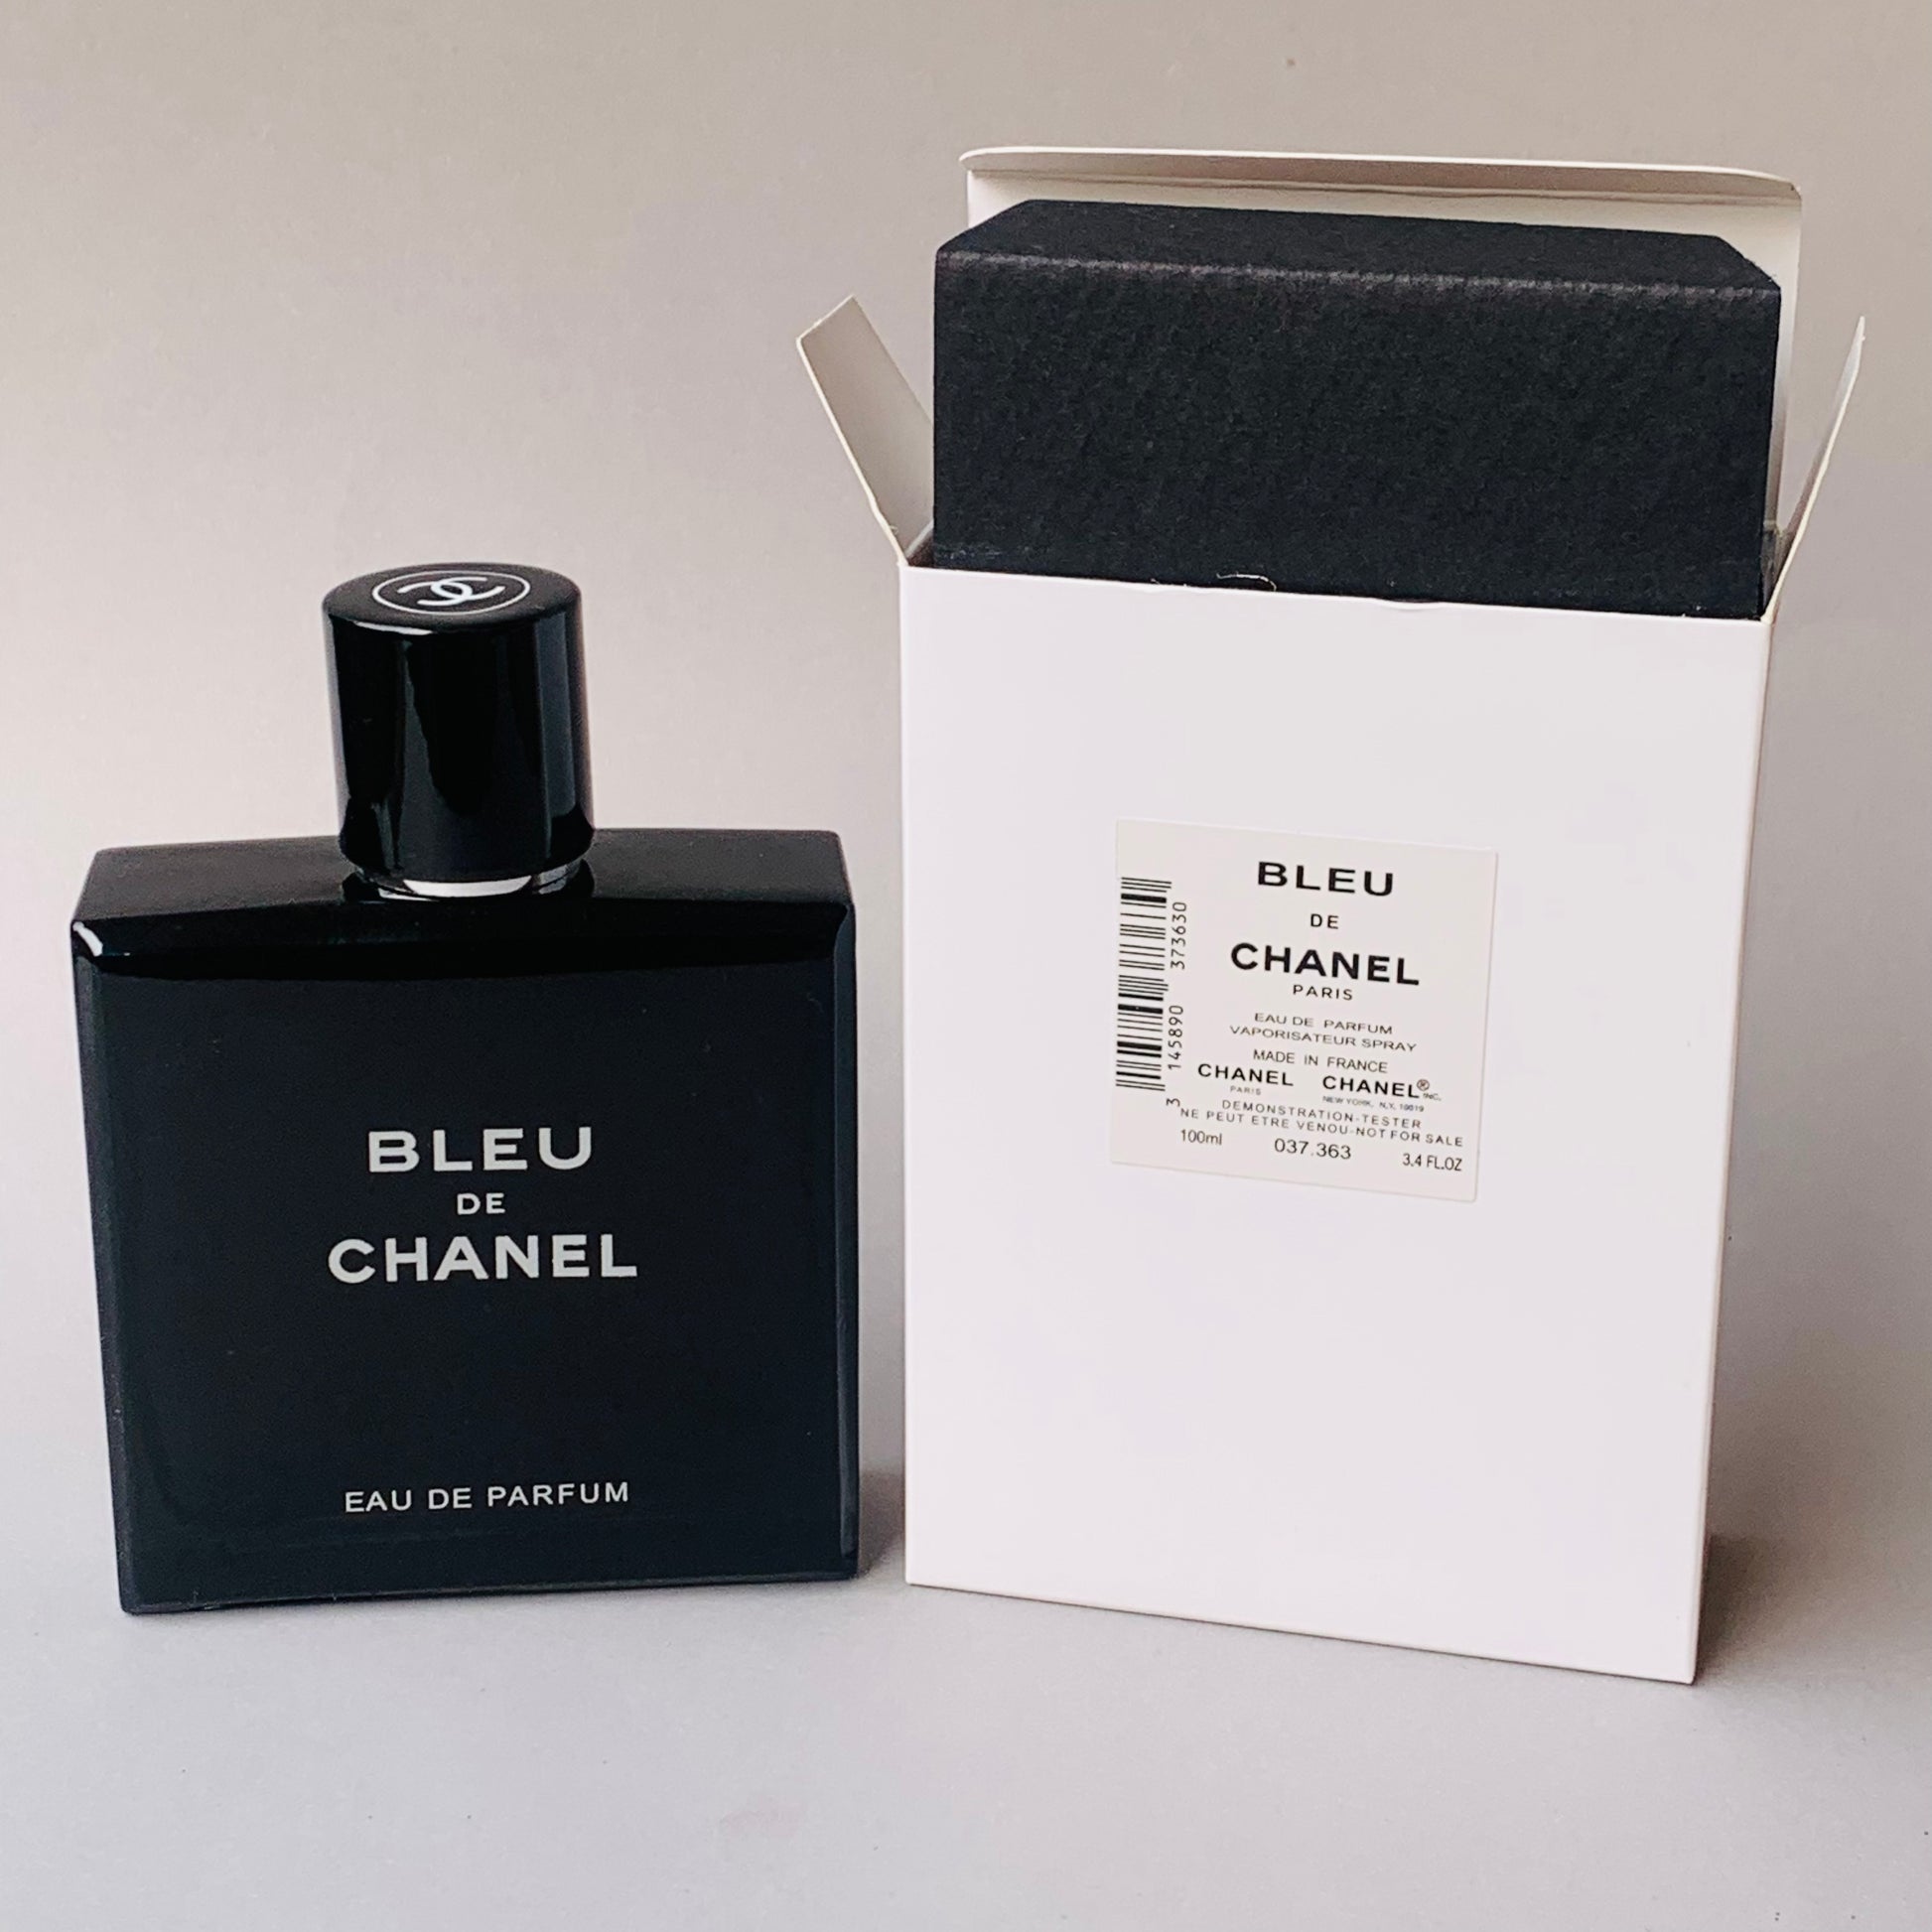 Buy Chanel Bleu De Chanel Eau de Parfum for Men - 100 ml Online